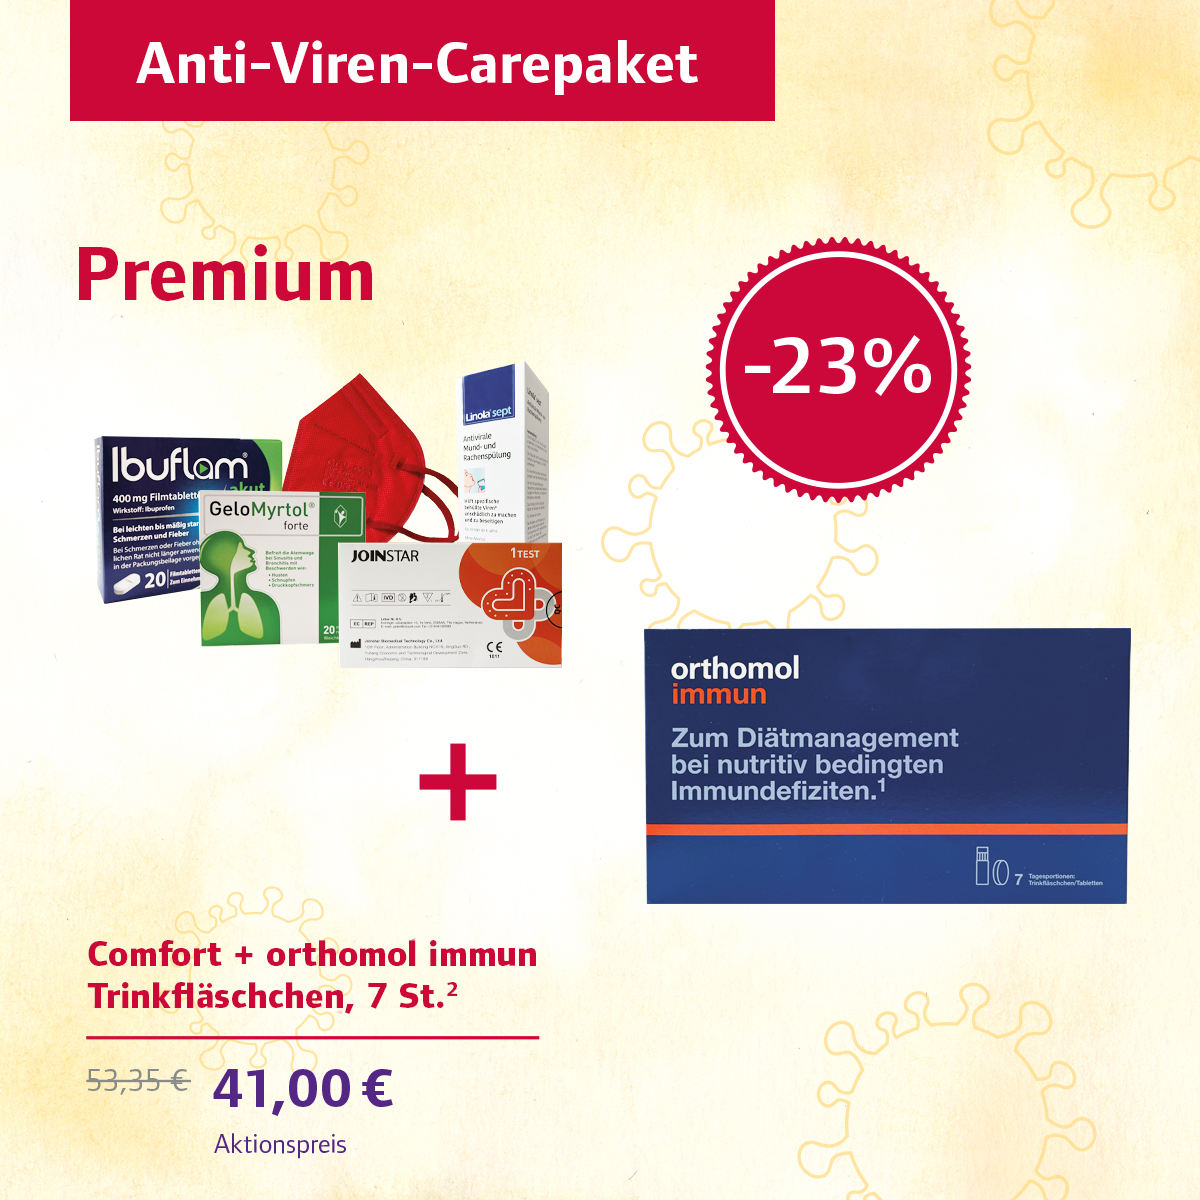 Anti-Viren-Carepaket Premium